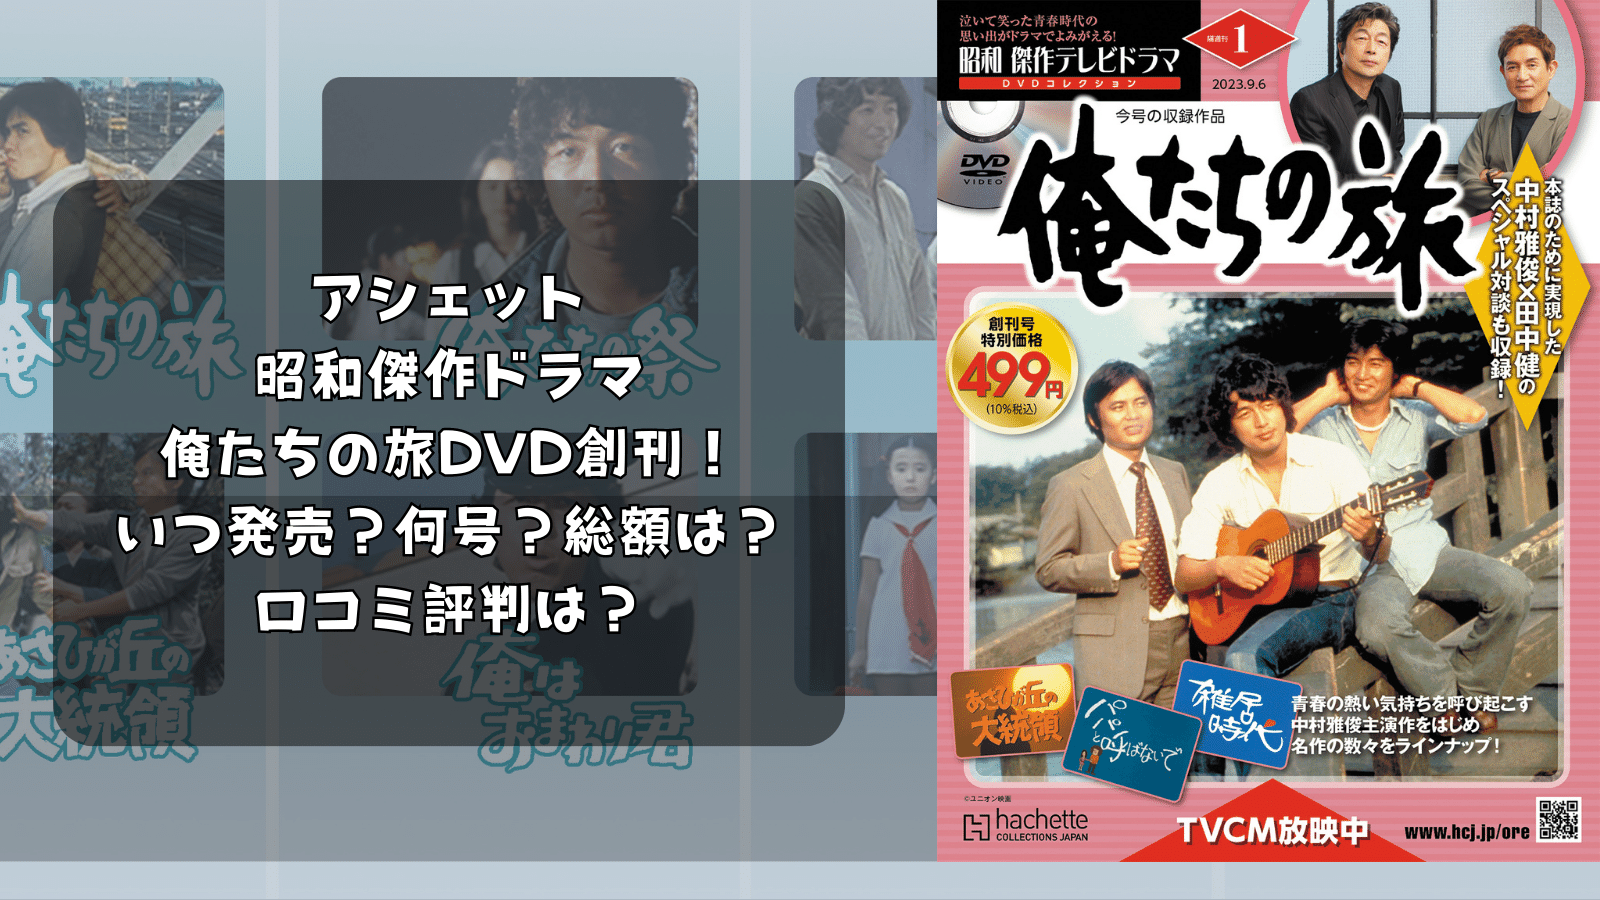 昭和 傑作テレビドラマ DVDコレクション